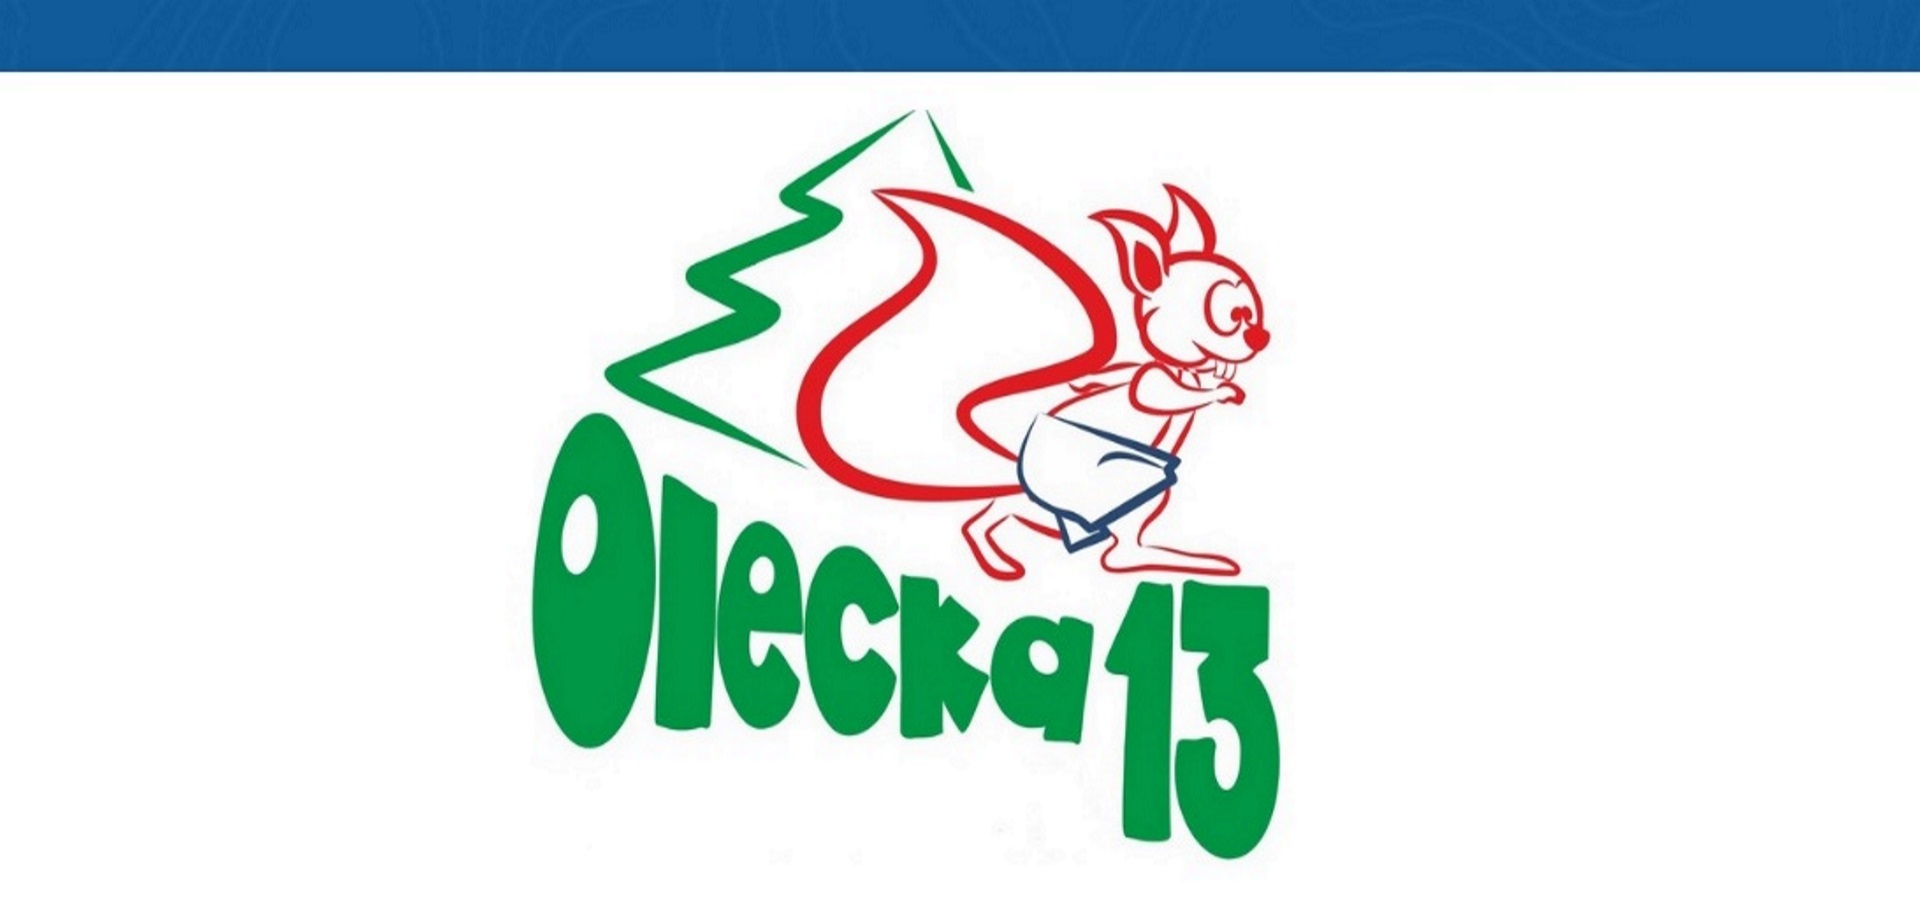 Plakat zapraszający do Olecka na kolejną edycję biegu Olecka Trzynastka. 